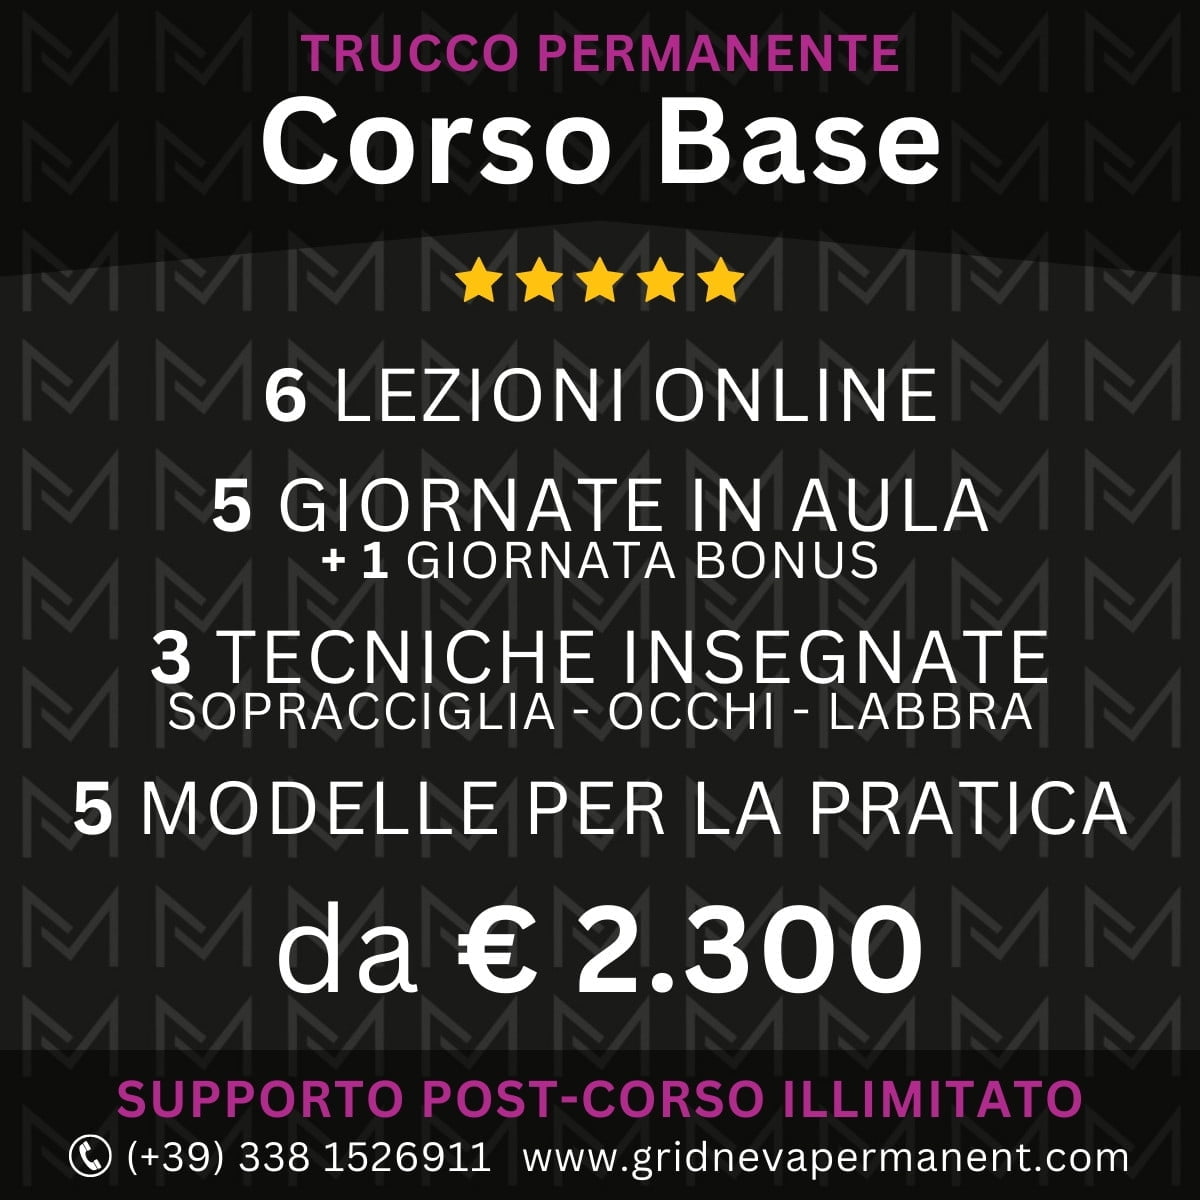 Corso Base Trucco Permanente Friuli Venezia Giulia - Veneto - Trentino Alto Adige - Lombardia - Emilia Romagna